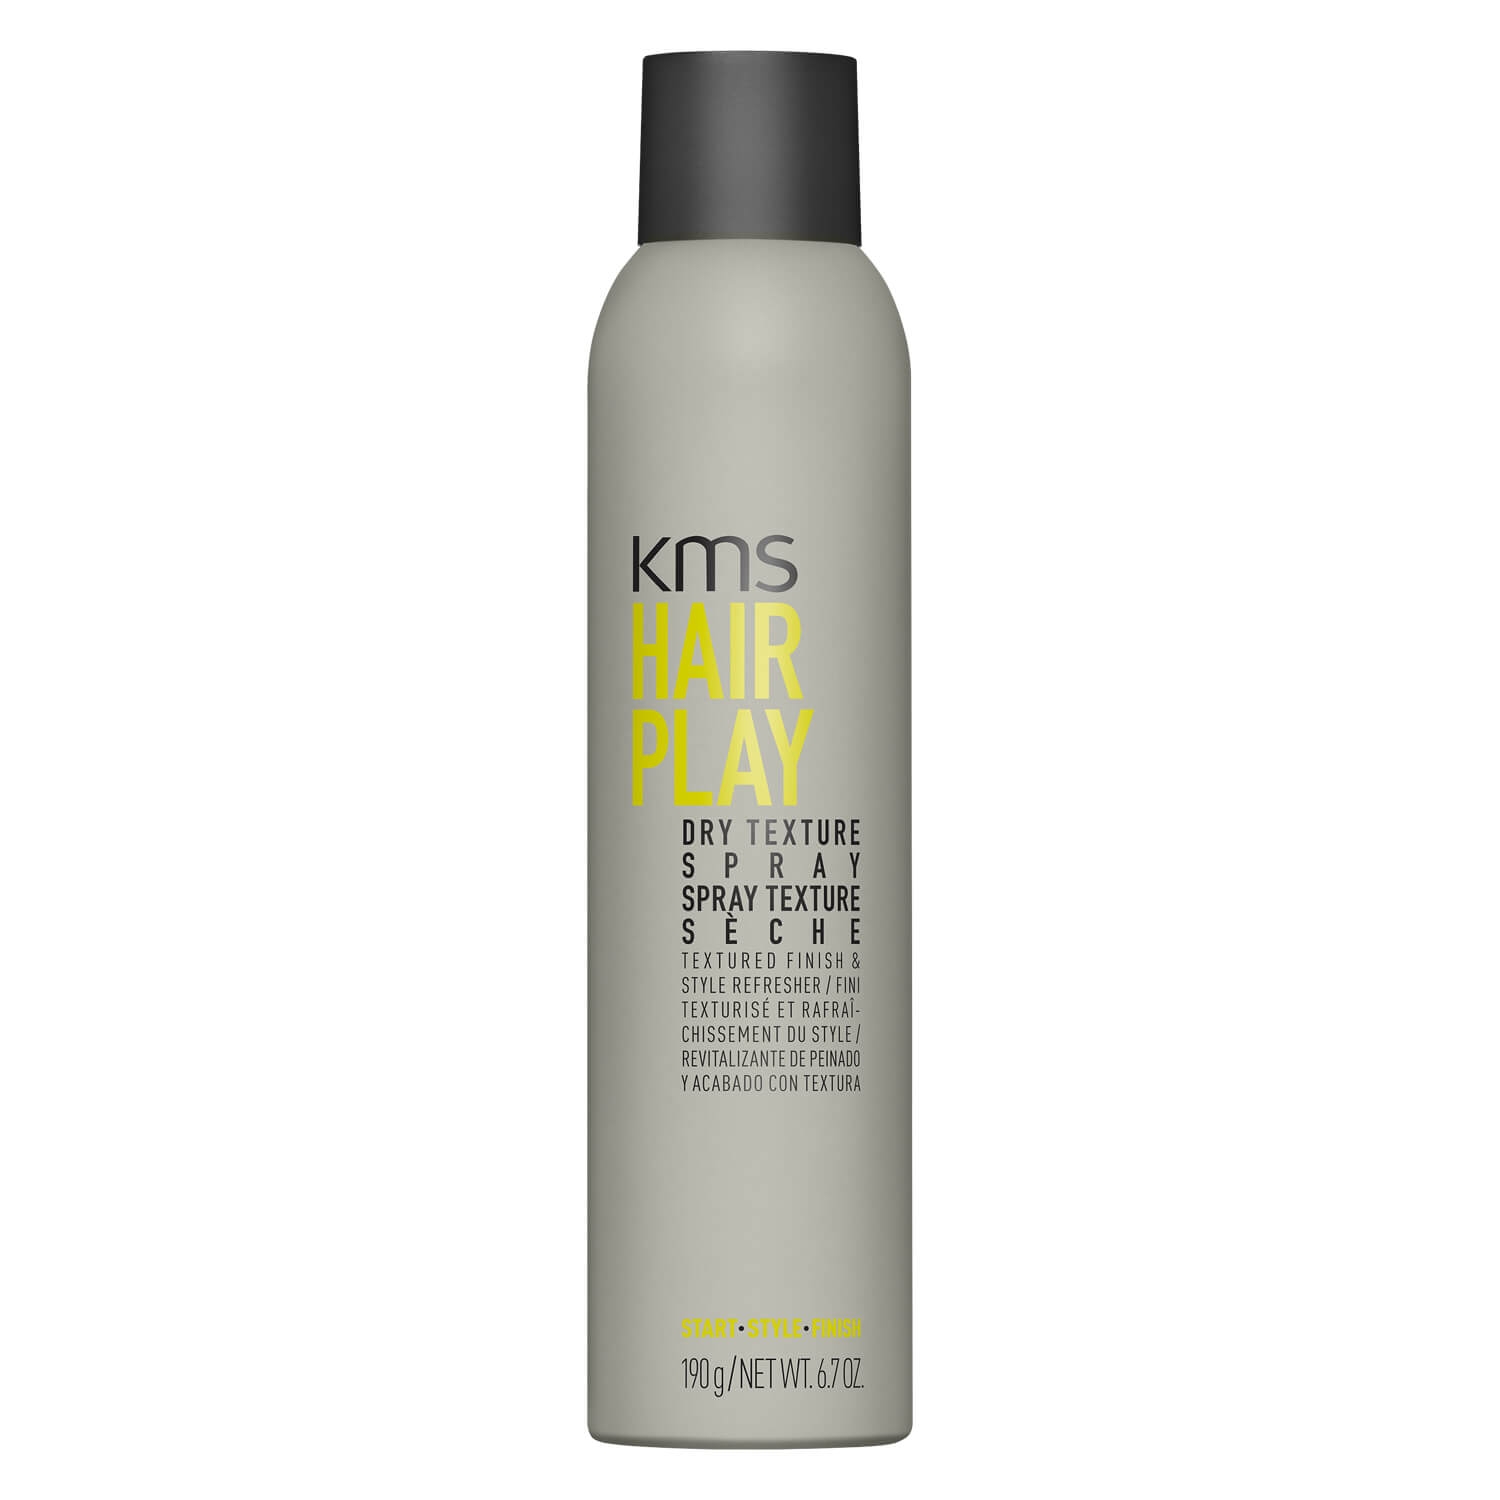 Produktbild von Hairplay Dry Texture Spray